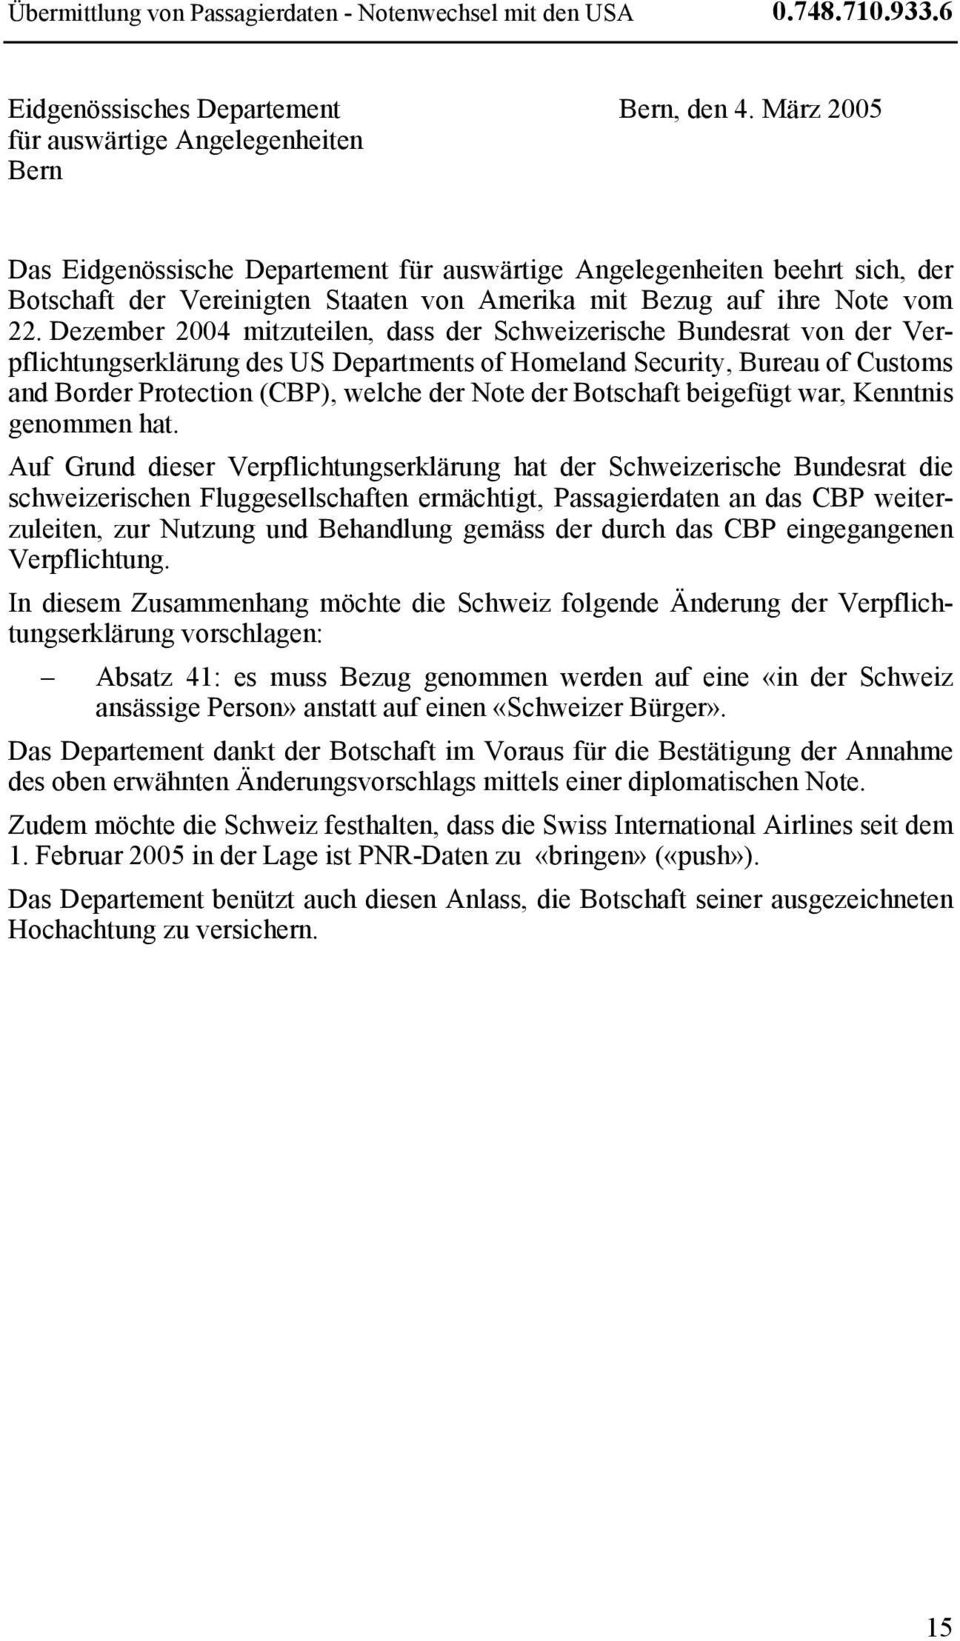 Dezember 2004 mitzuteilen, dass der Schweizerische Bundesrat von der Verpflichtungserklärung des US Departments of Homeland Security, Bureau of Customs and Border Protection (CBP), welche der Note